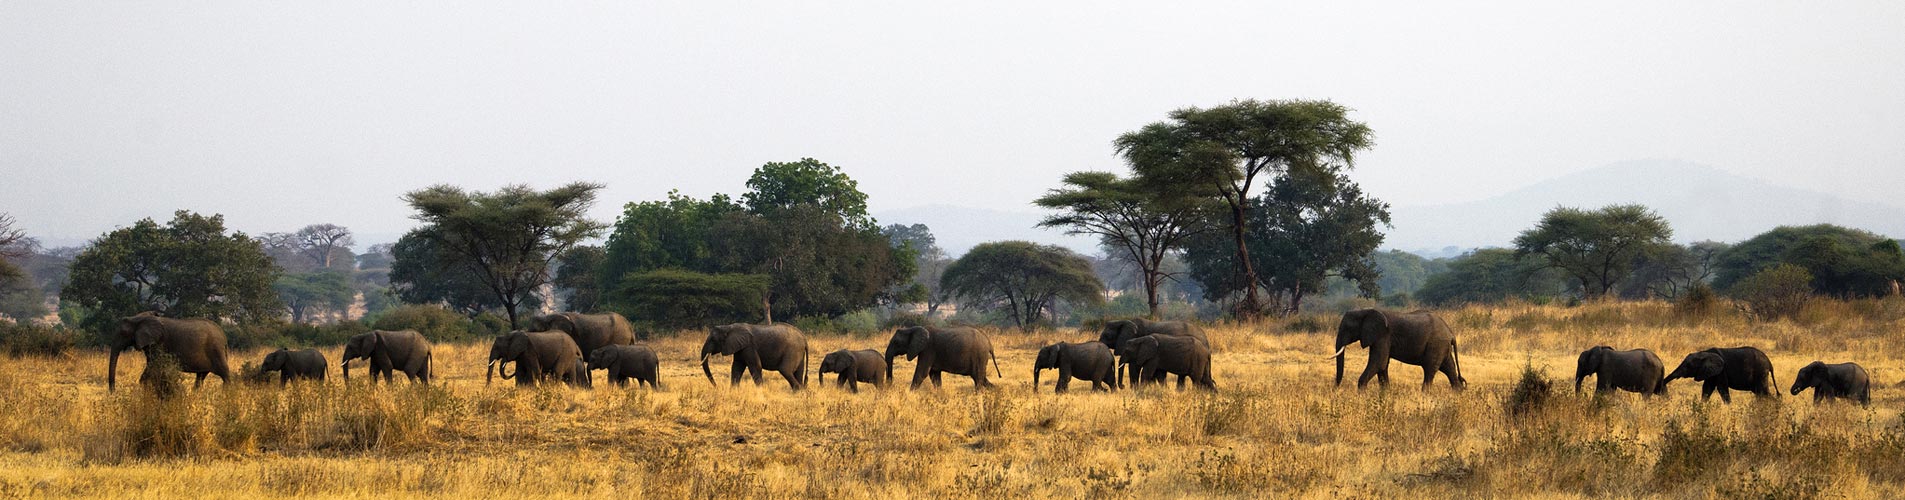 Tanzania Safari Elephant Crossing